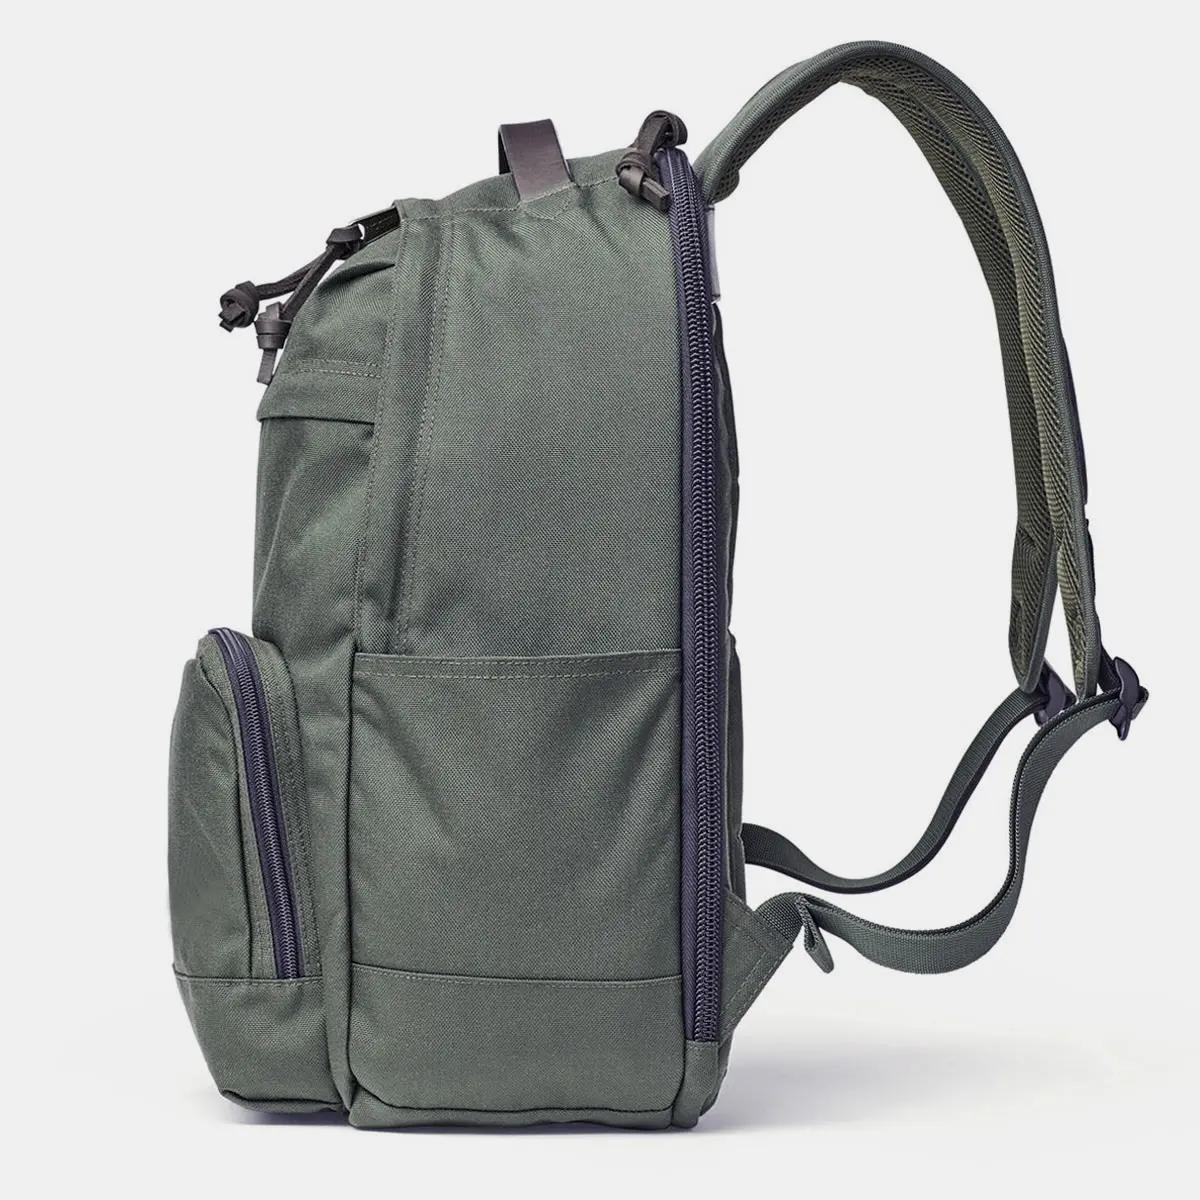 Tägliches benutzer definiertes Logo Oxford Unisex Laptop Rucksack Reise rucksack Schult aschen